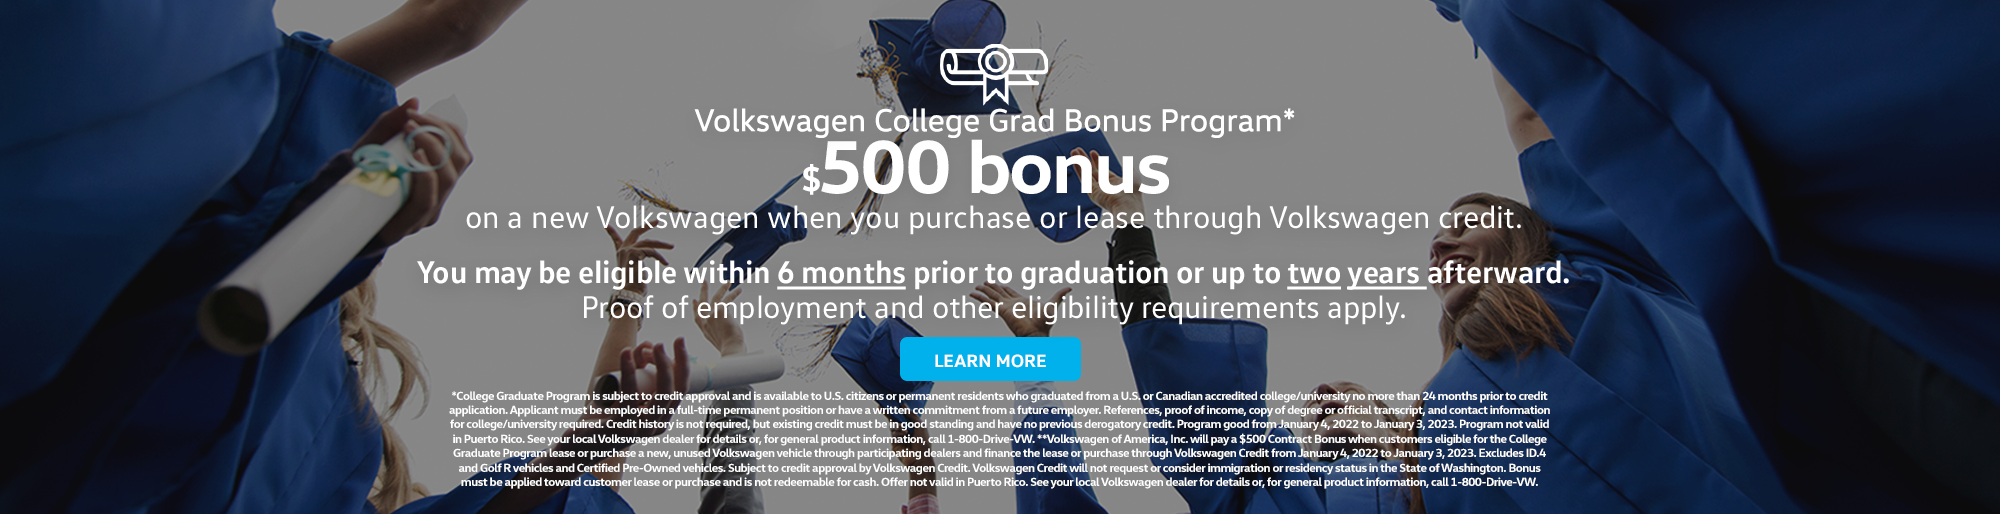 Volkswagen Manhattan College Grad Program 